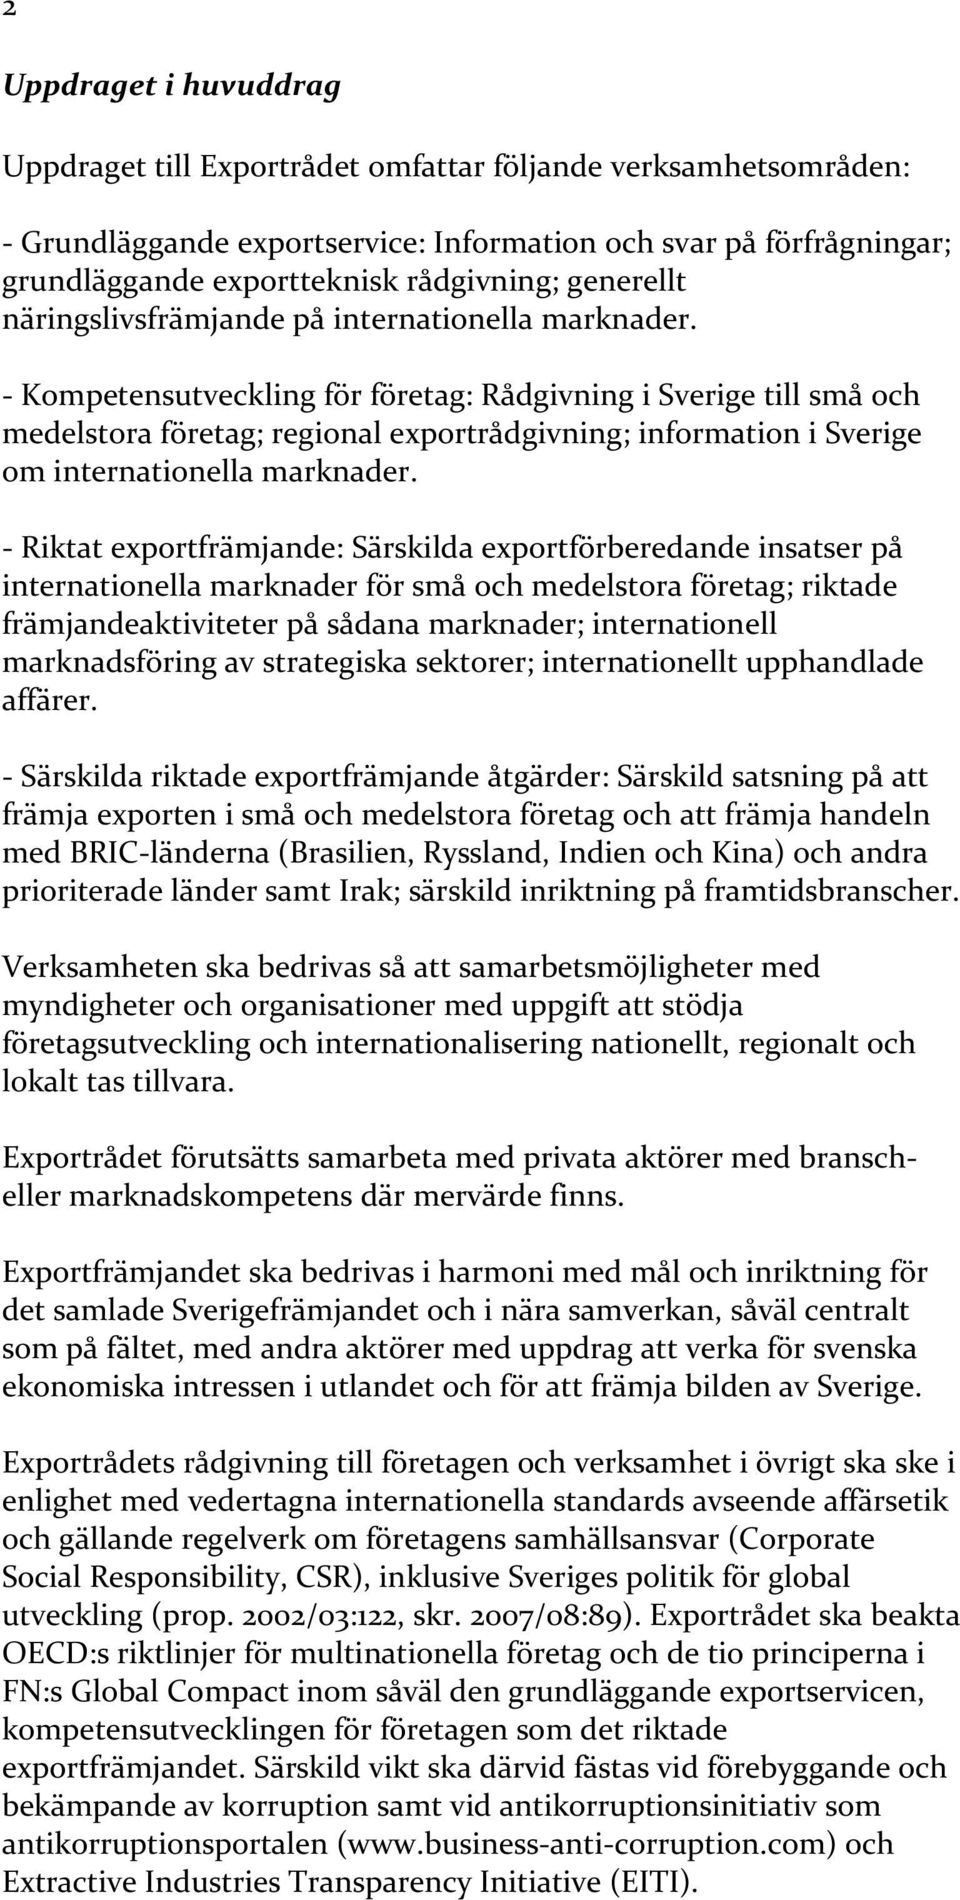 - Kompetensutveckling för företag: Rådgivning i Sverige till små och medelstora företag; regional exportrådgivning; information i Sverige om internationella marknader.